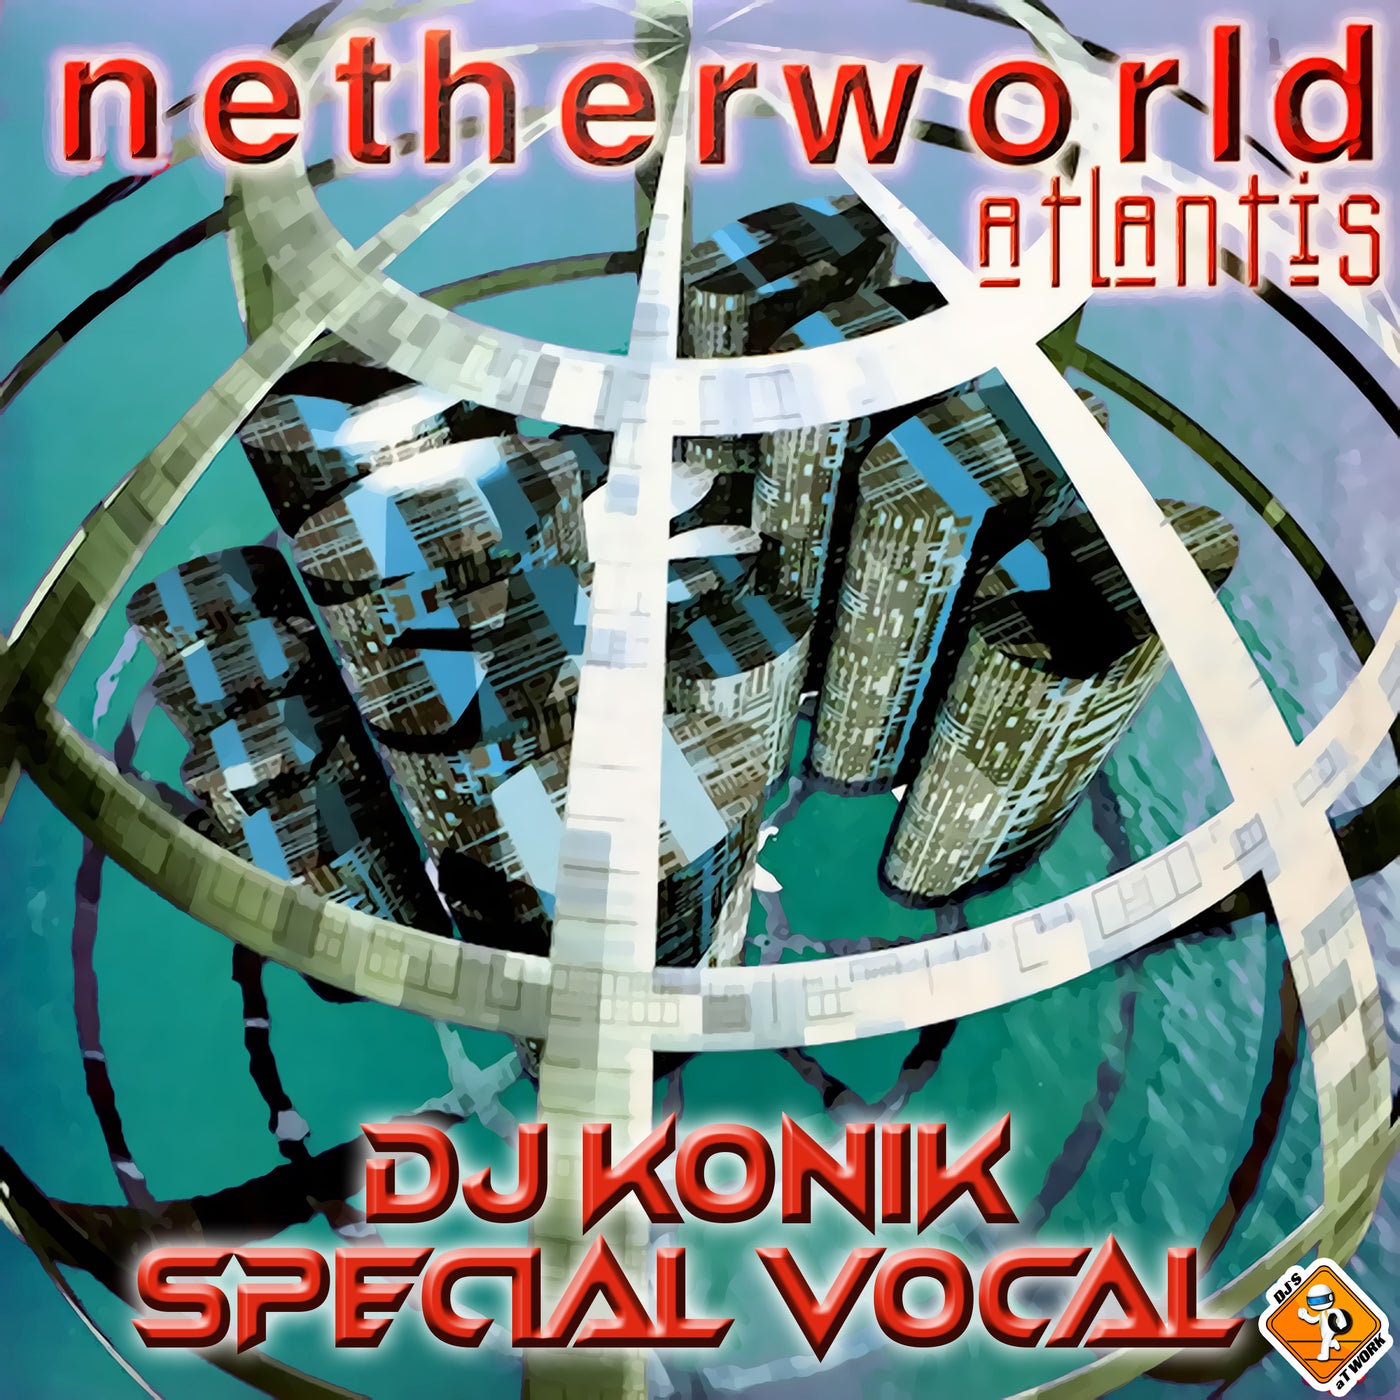 Atlantis (DJ Konik Special Vocal)